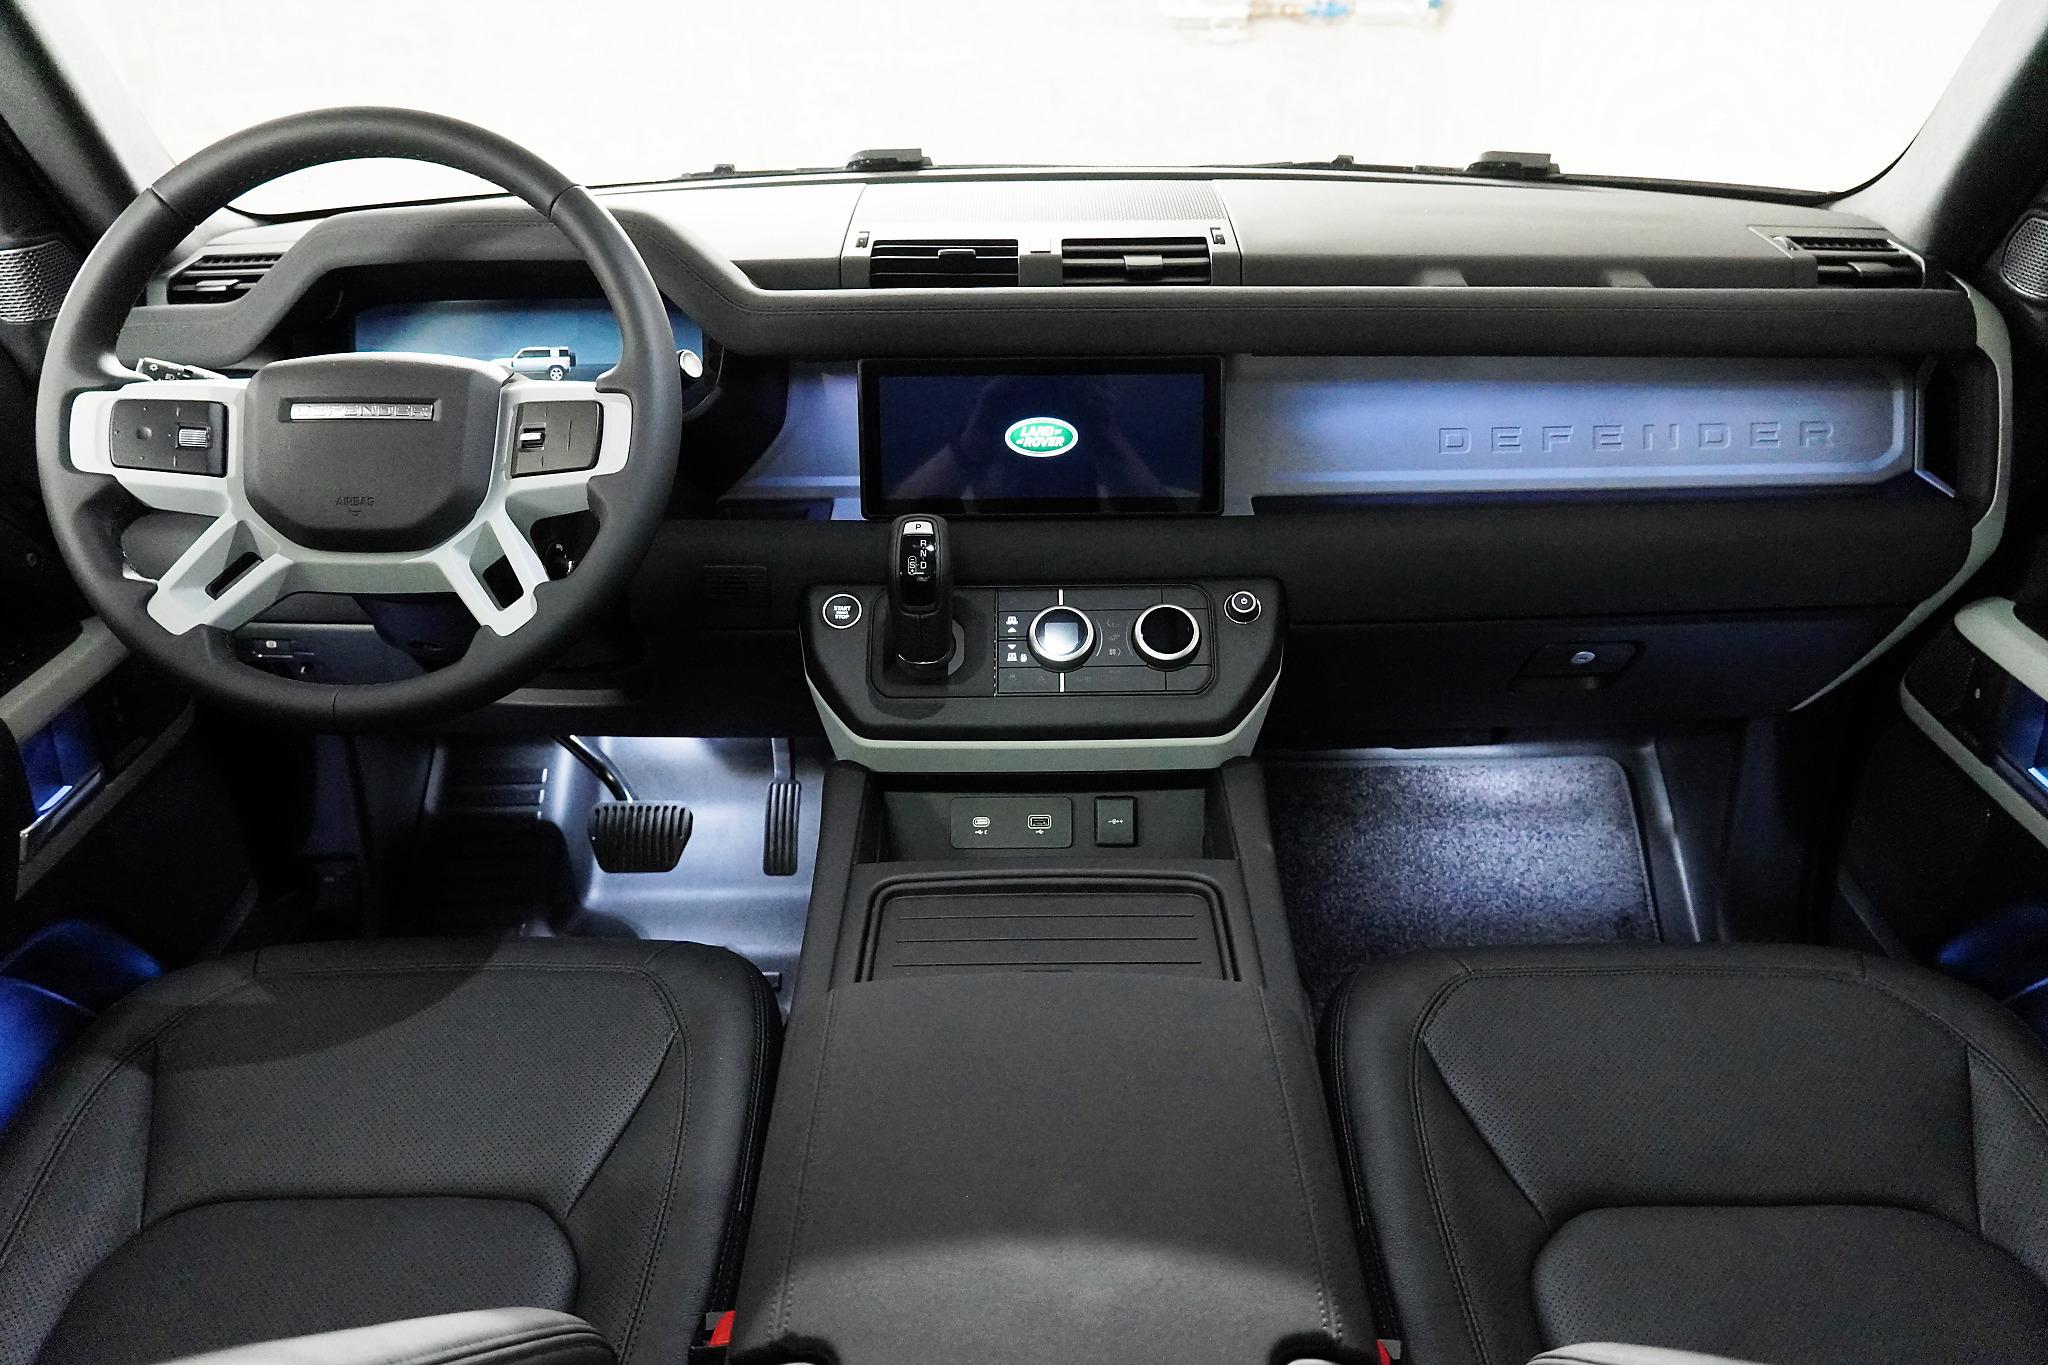  Voiture Cuir Caches de Volant pour Land Rover A9 Range